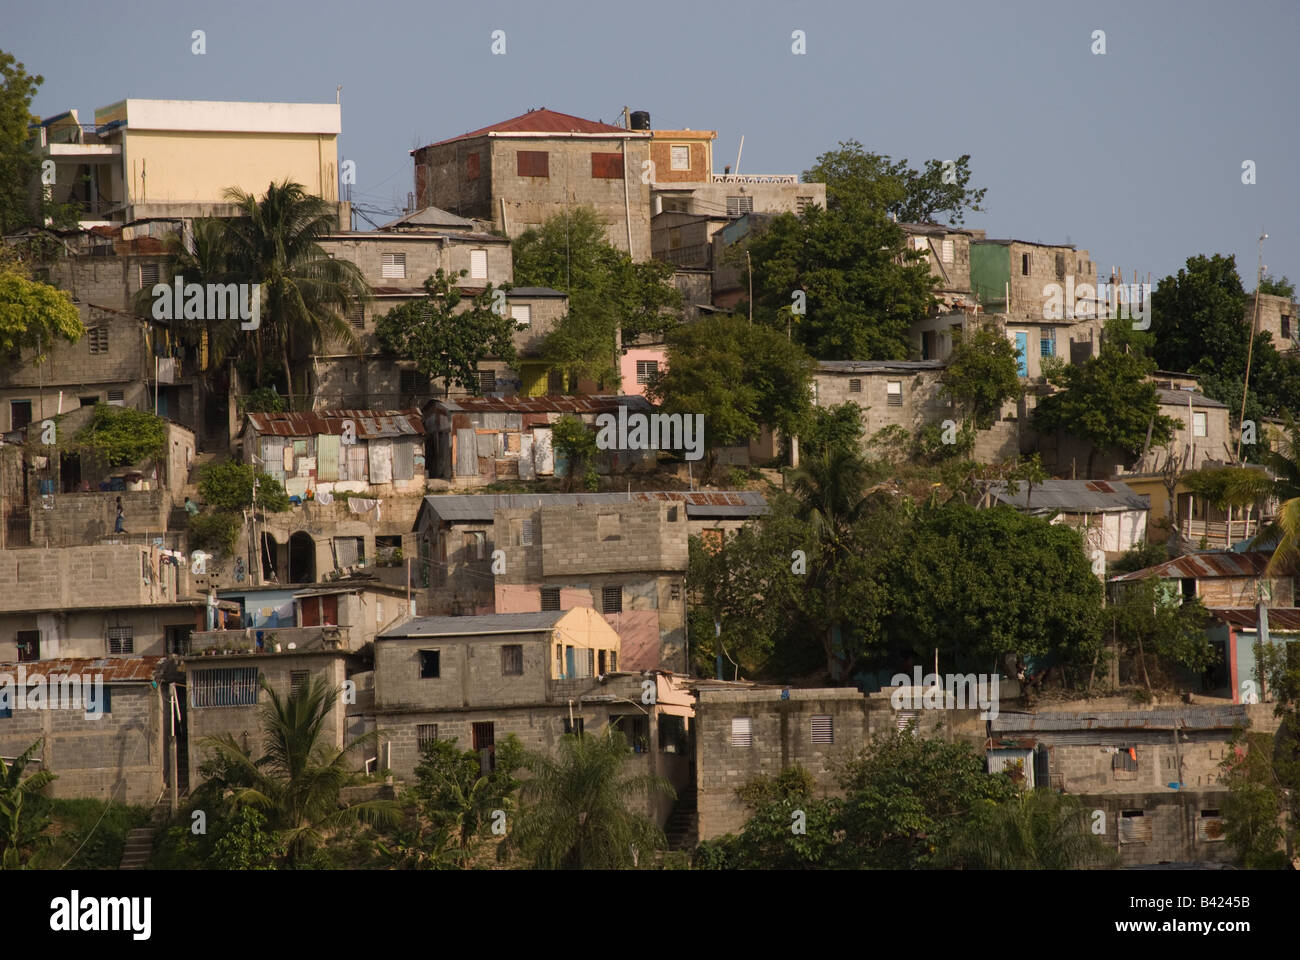 Un quartier pauvre d'un pays, l'onu-développement caractérisé par une agglomération vivant et maisons inachevées. Banque D'Images